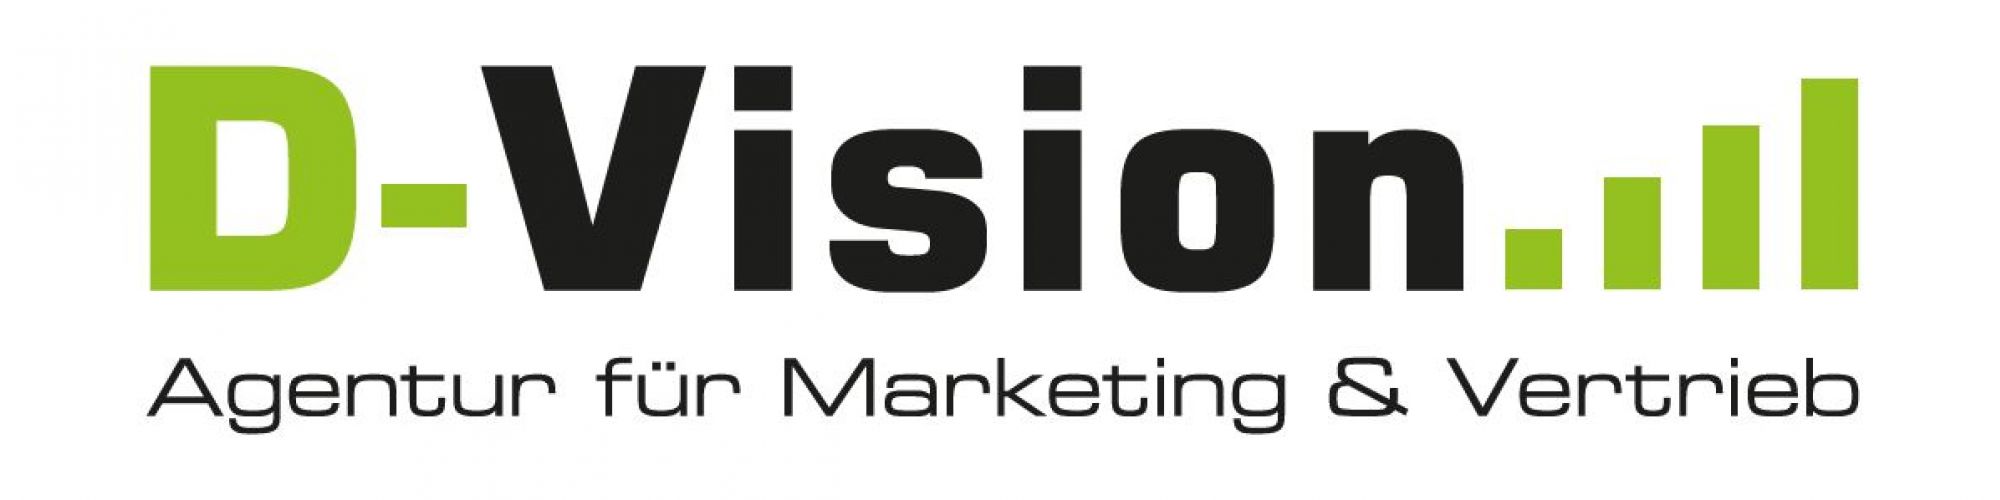 D-Vision Agentur für Marketing & Vertrieb